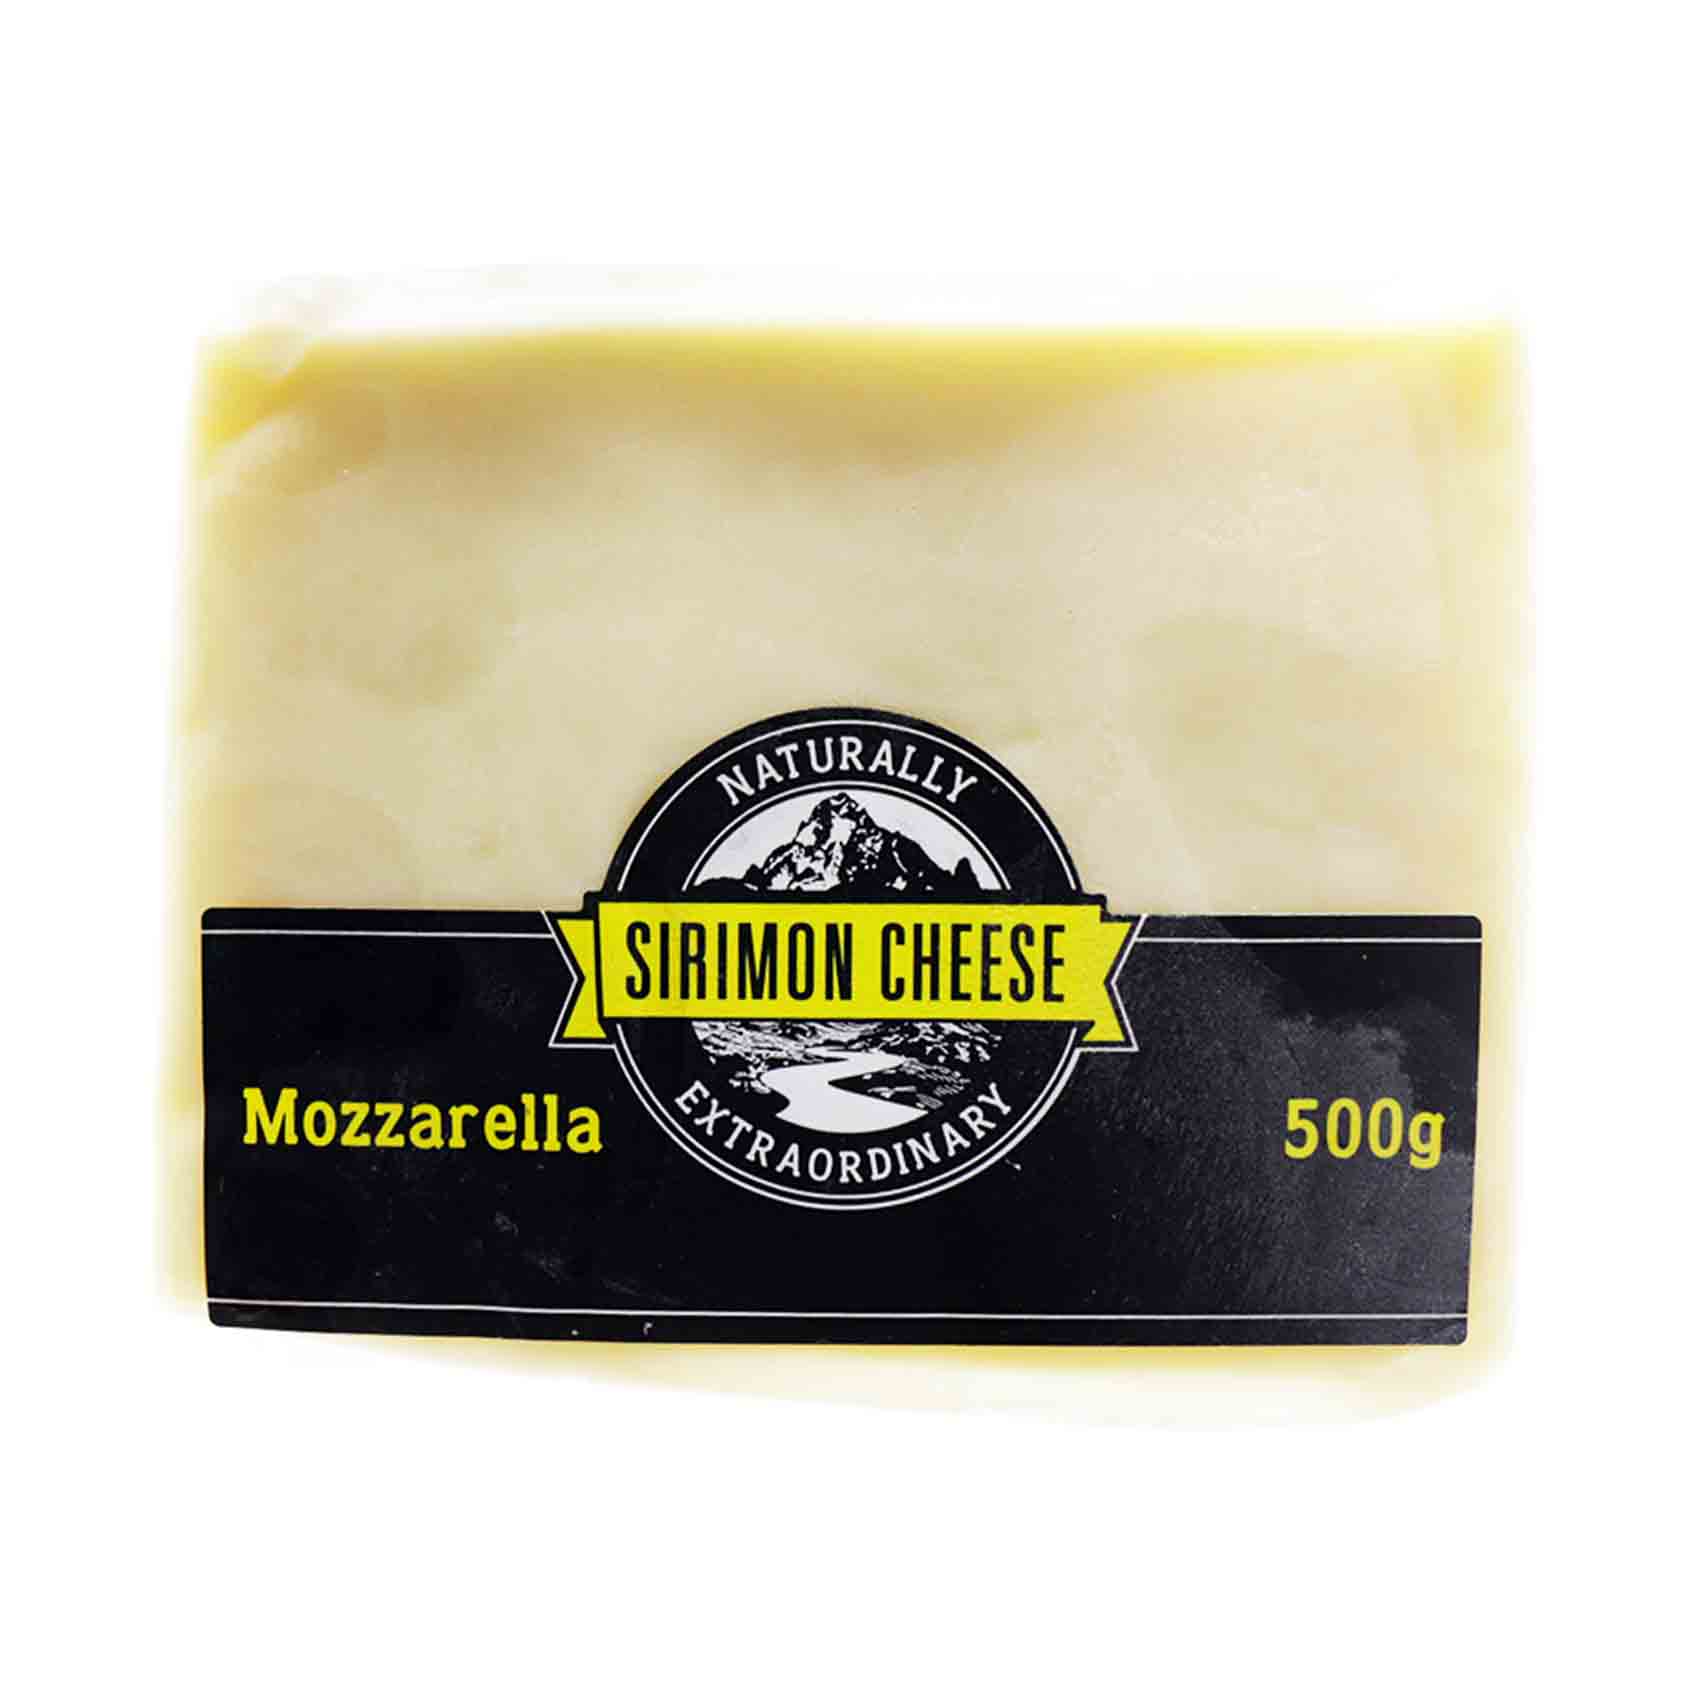 Sirimon Cheese Mozzarella 500G